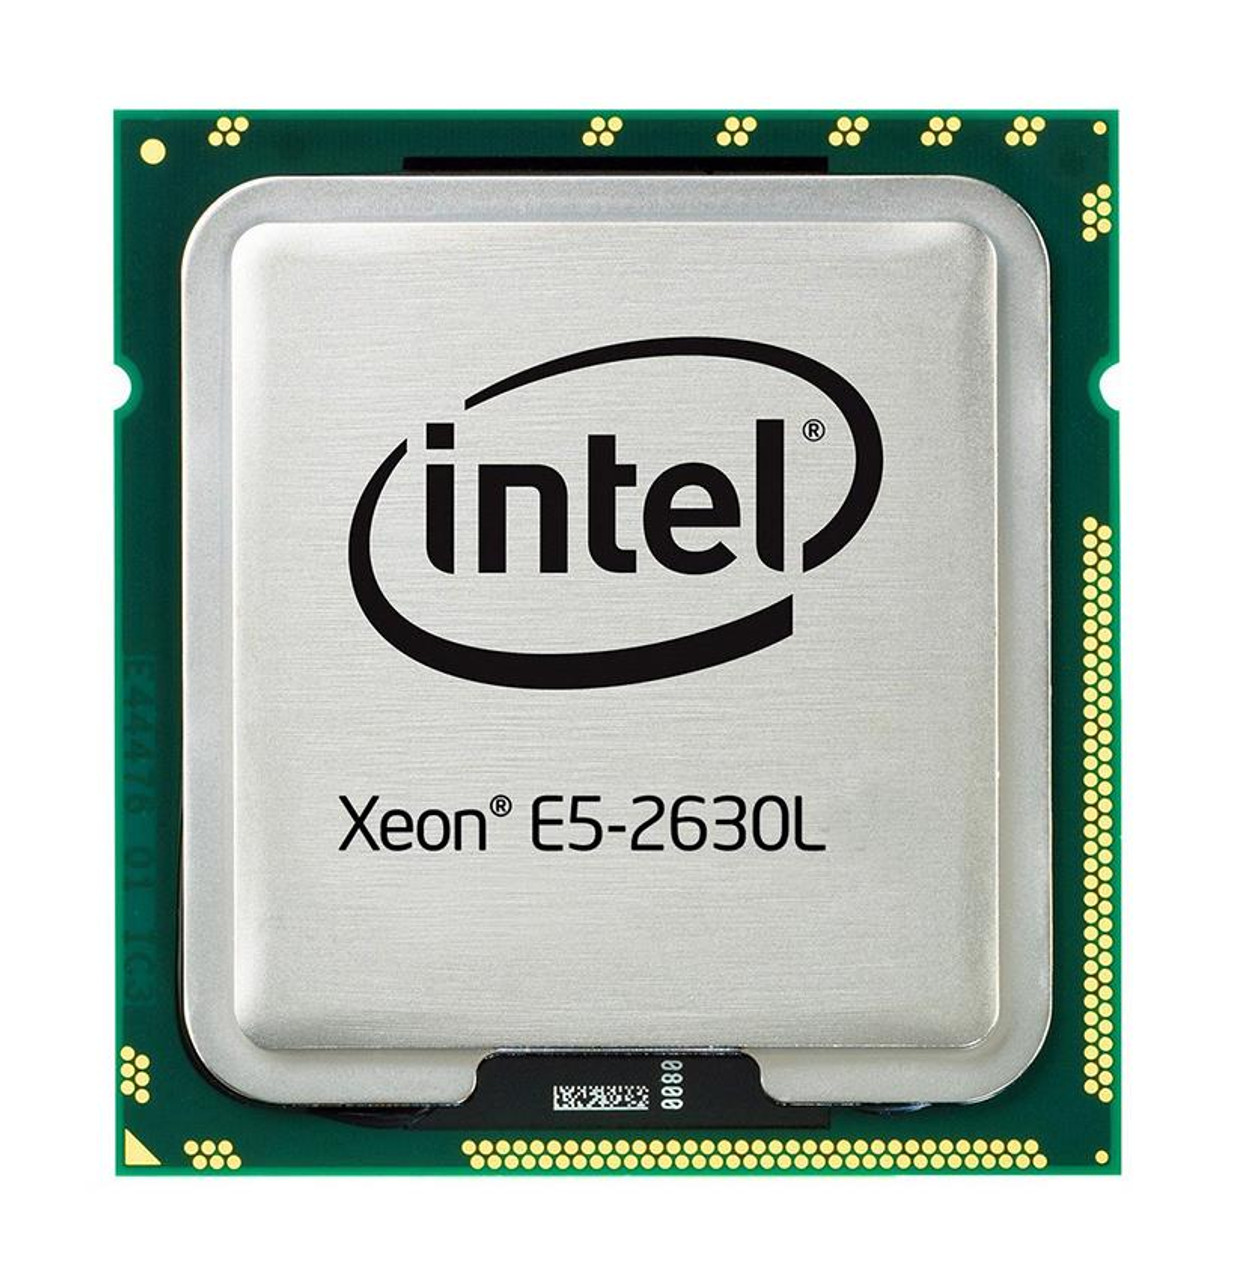 QBUM Intel Xeon E5-2630L 6-Core 2.00GHz 7.20GT/s QPI 15MB L3 Cache Processor